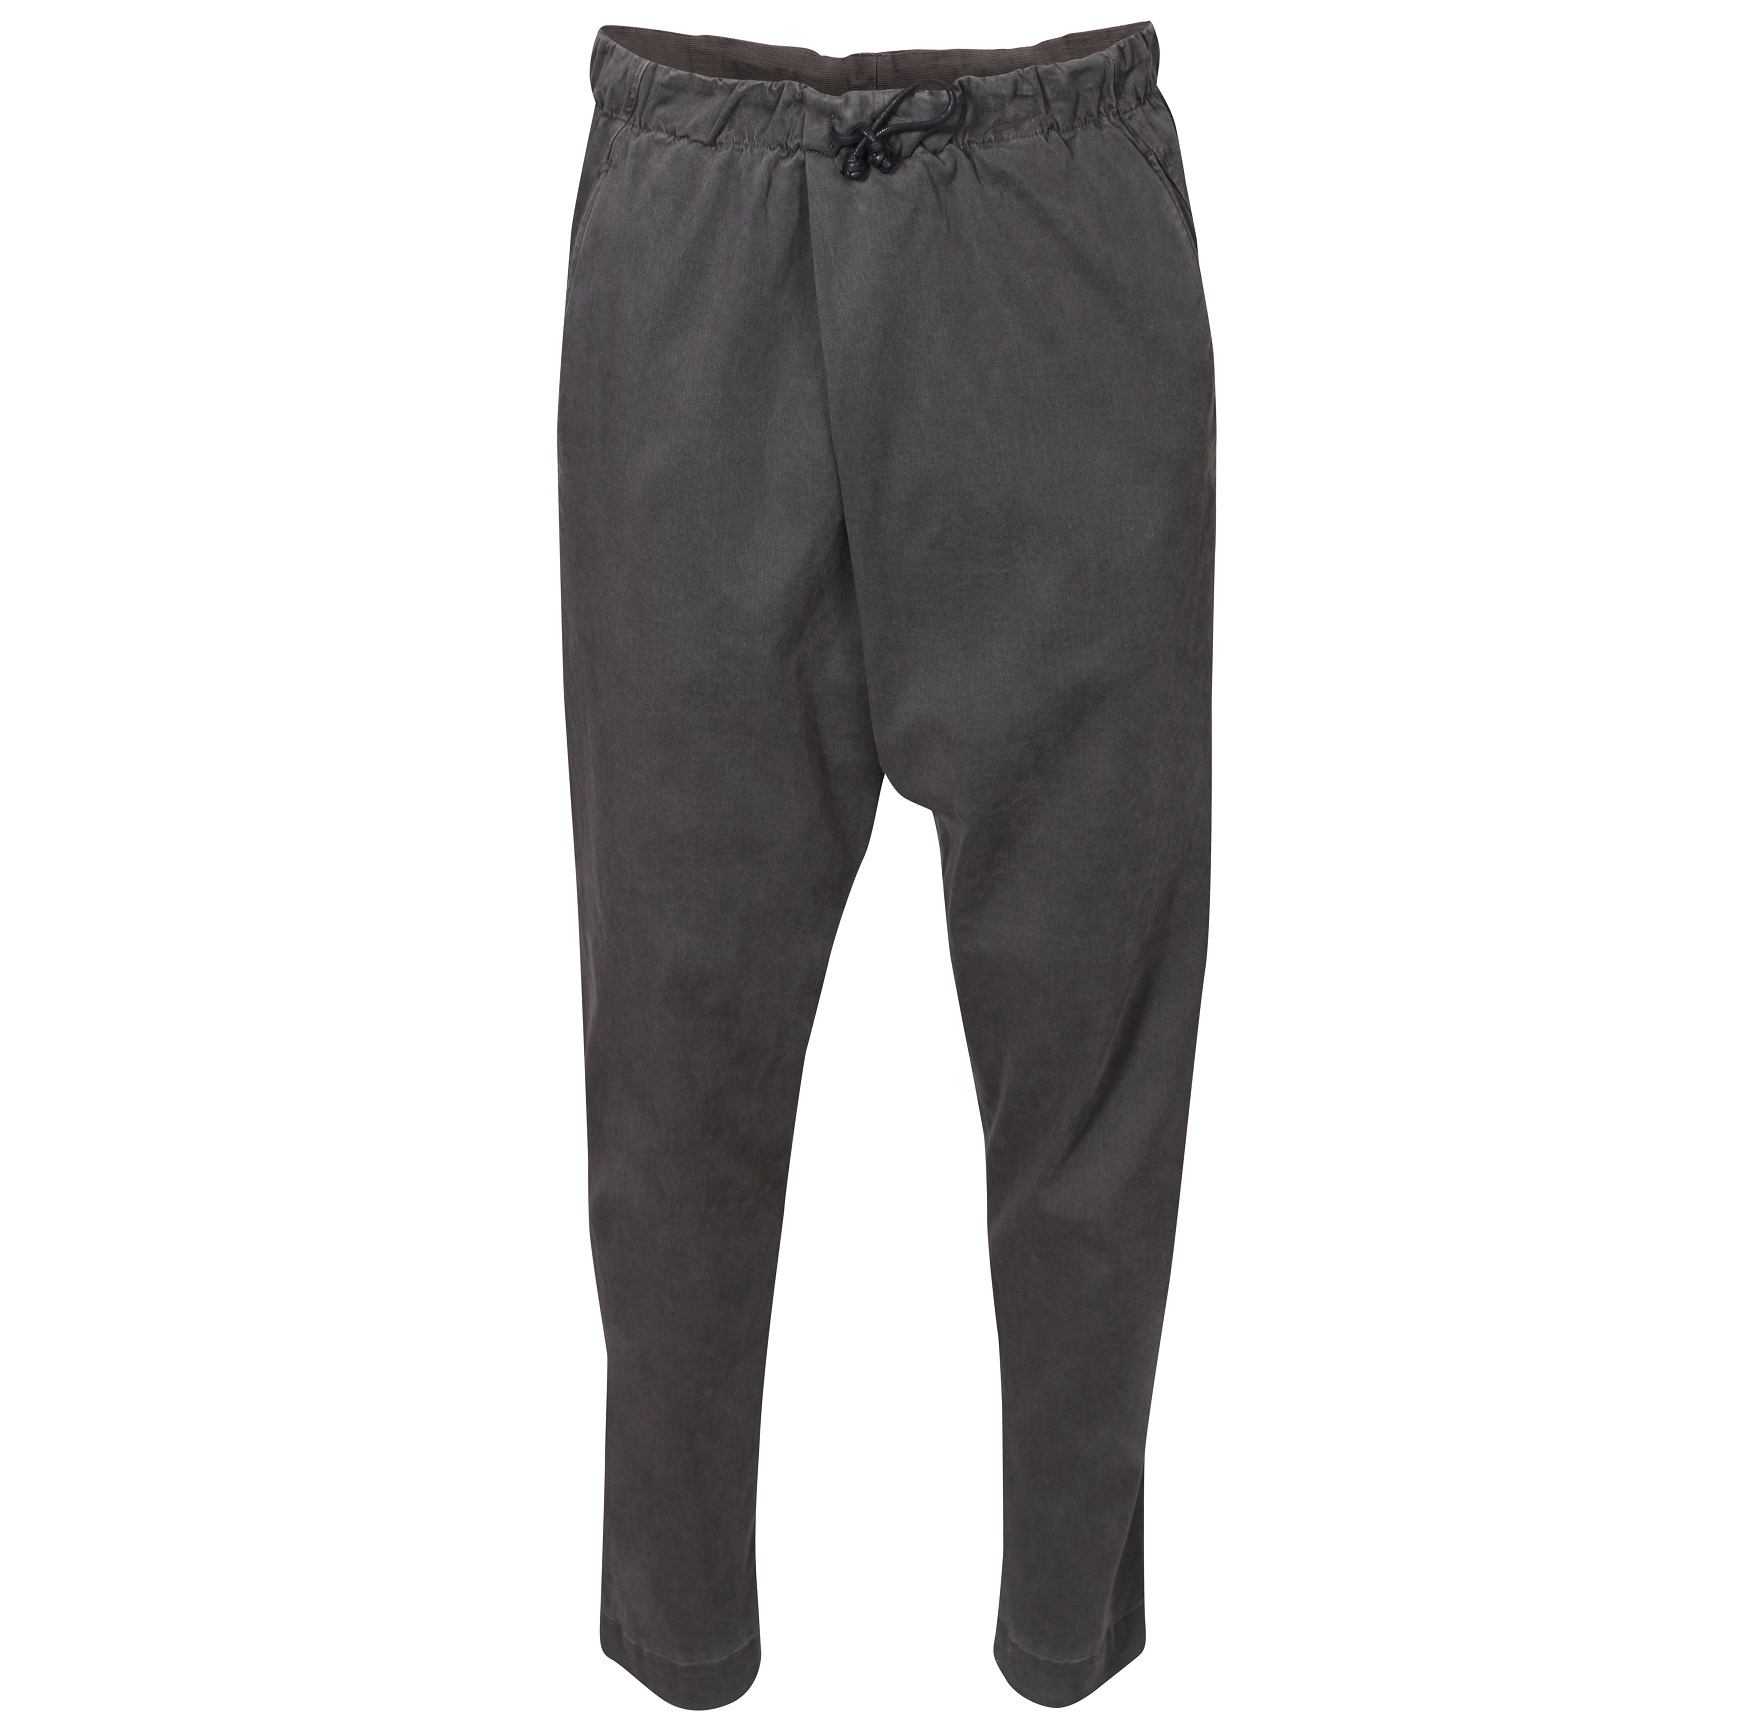 TRANSIT UOMO Soft Pant in Dark Grey